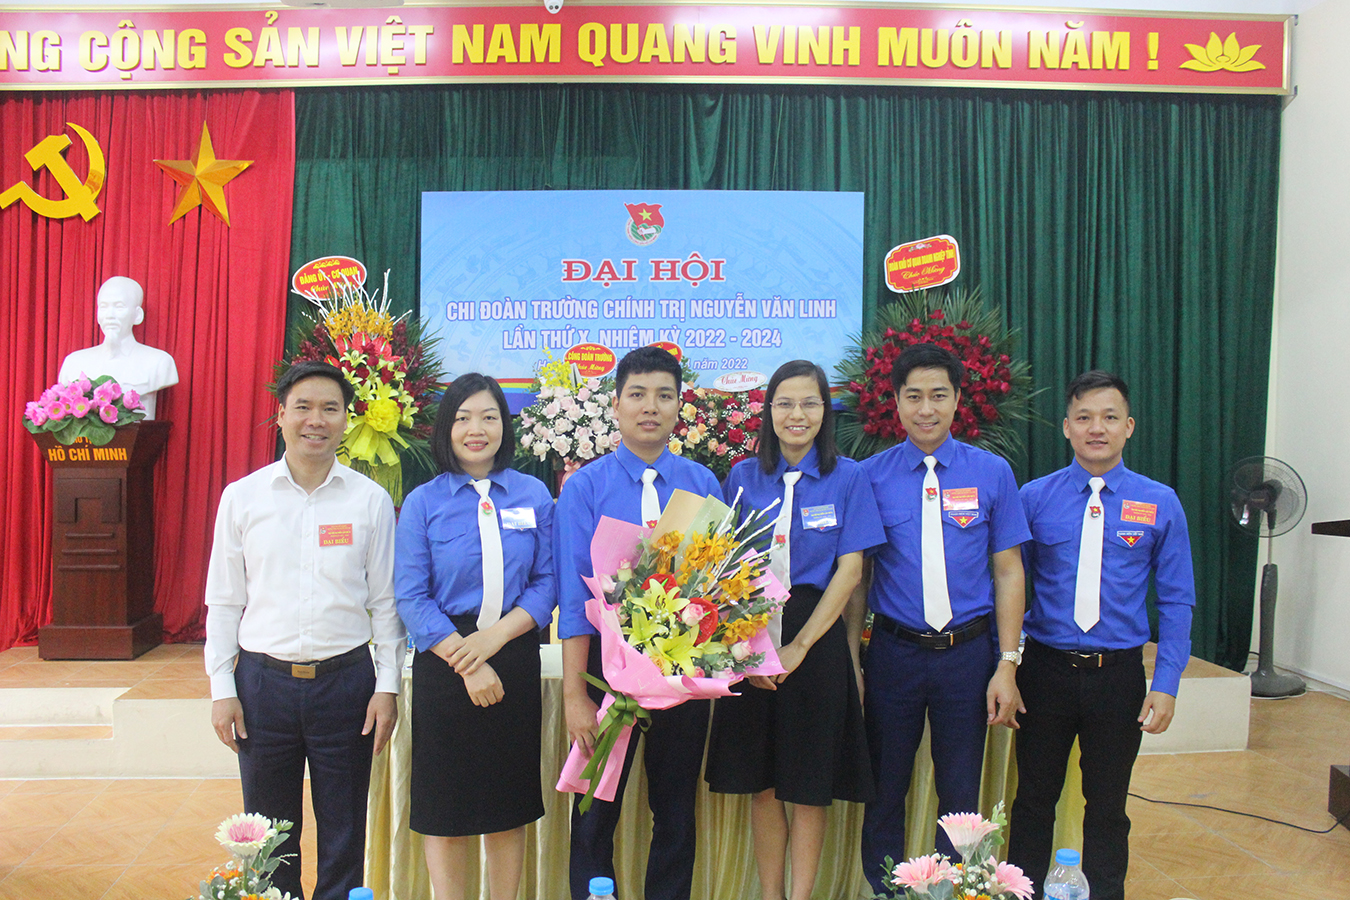 Đại hội chi đoàn Trường Chính trị Nguyễn Văn Linh lần thứ X, nhiệm kỳ 2022-2024